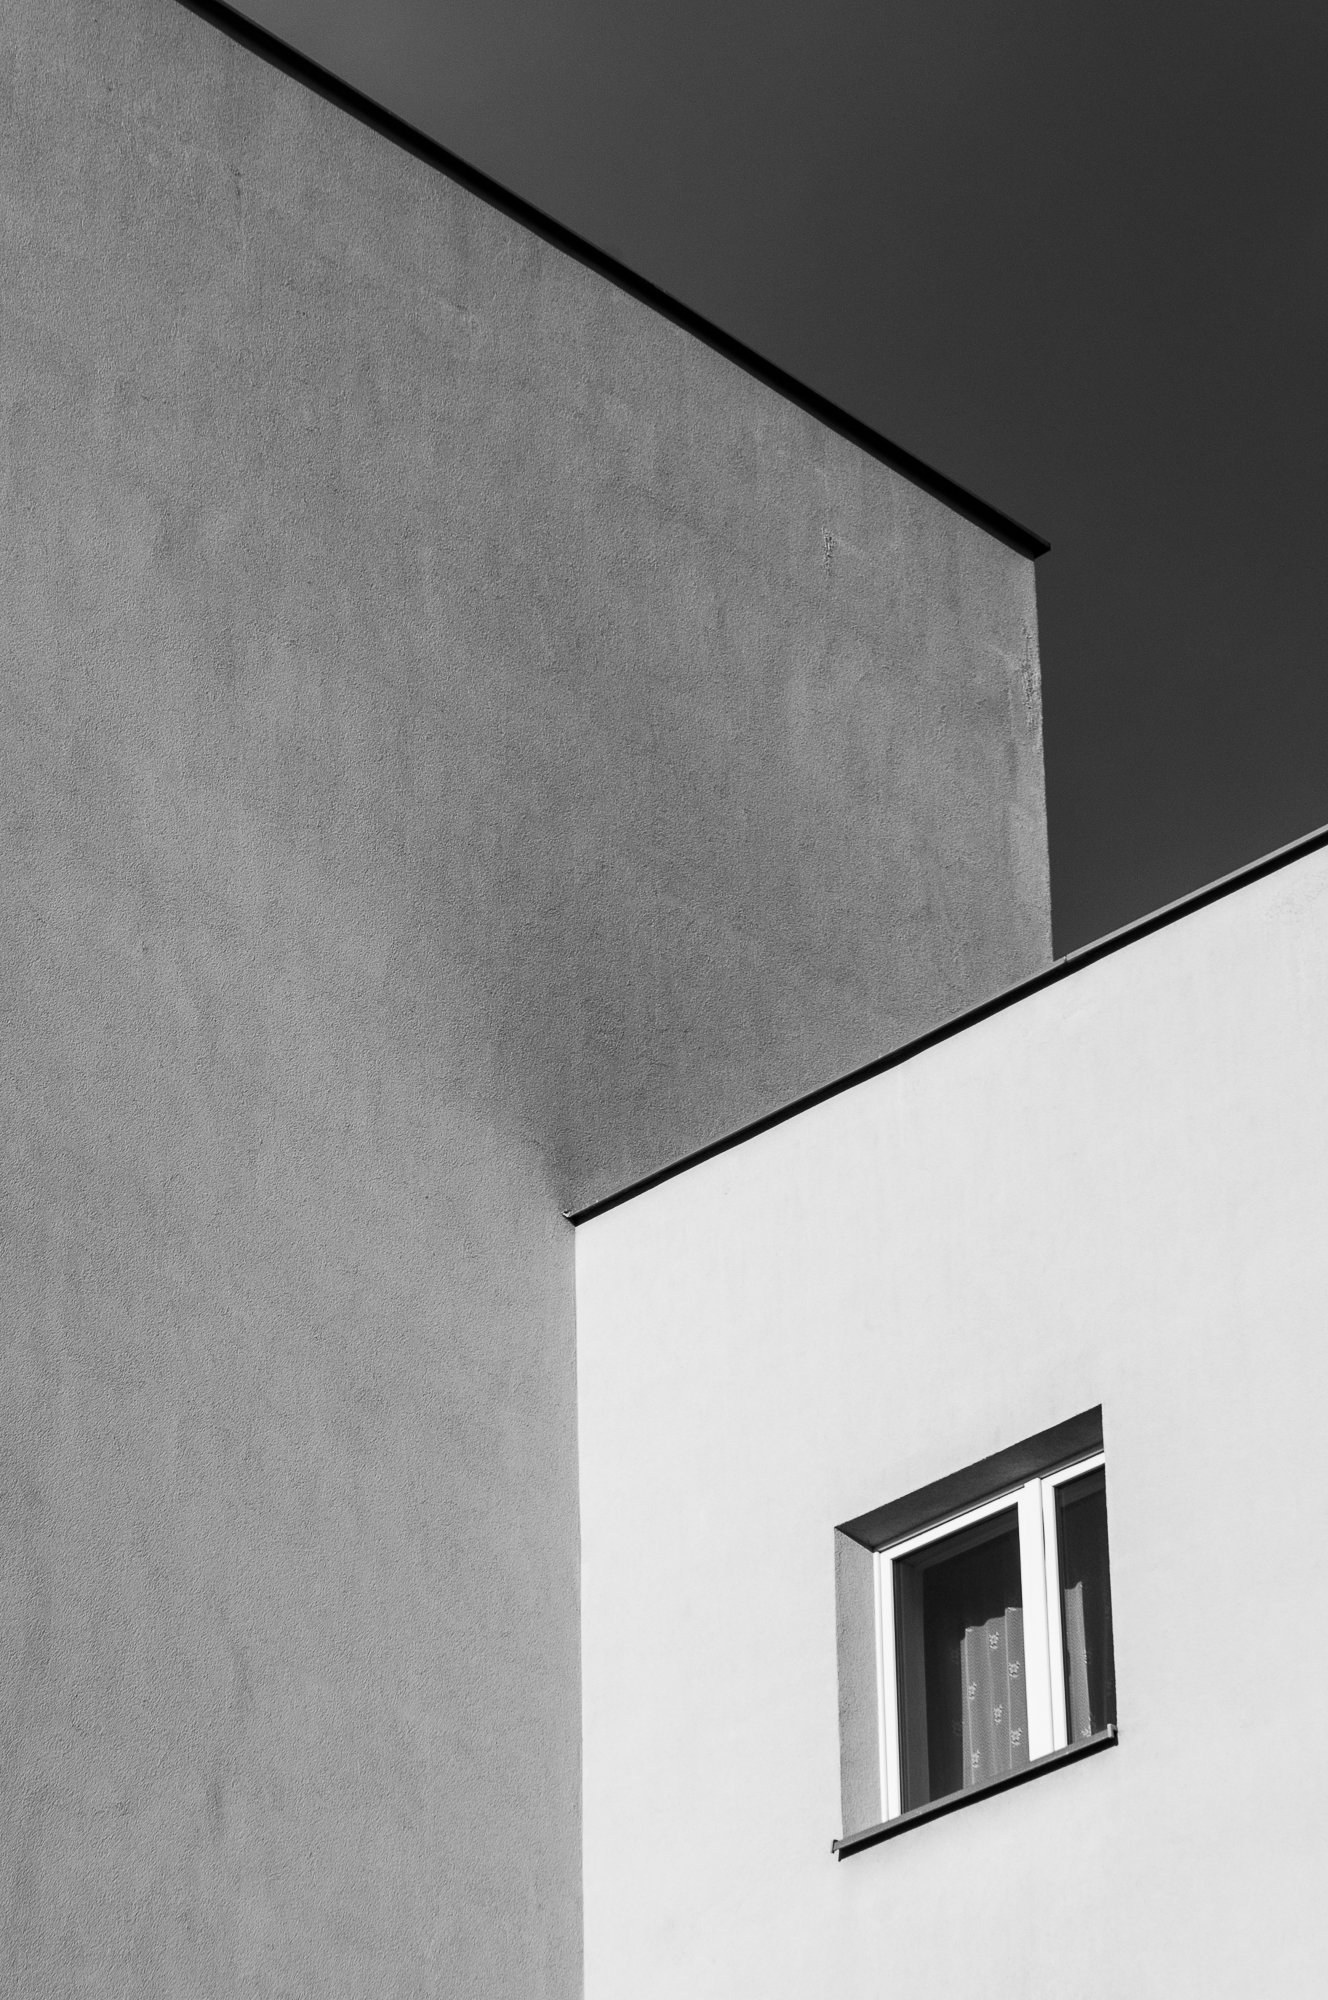 Adam Mazek Photography Warsaw (Warszawa) 2018. Minimalism. Post: "Dualism." Window.